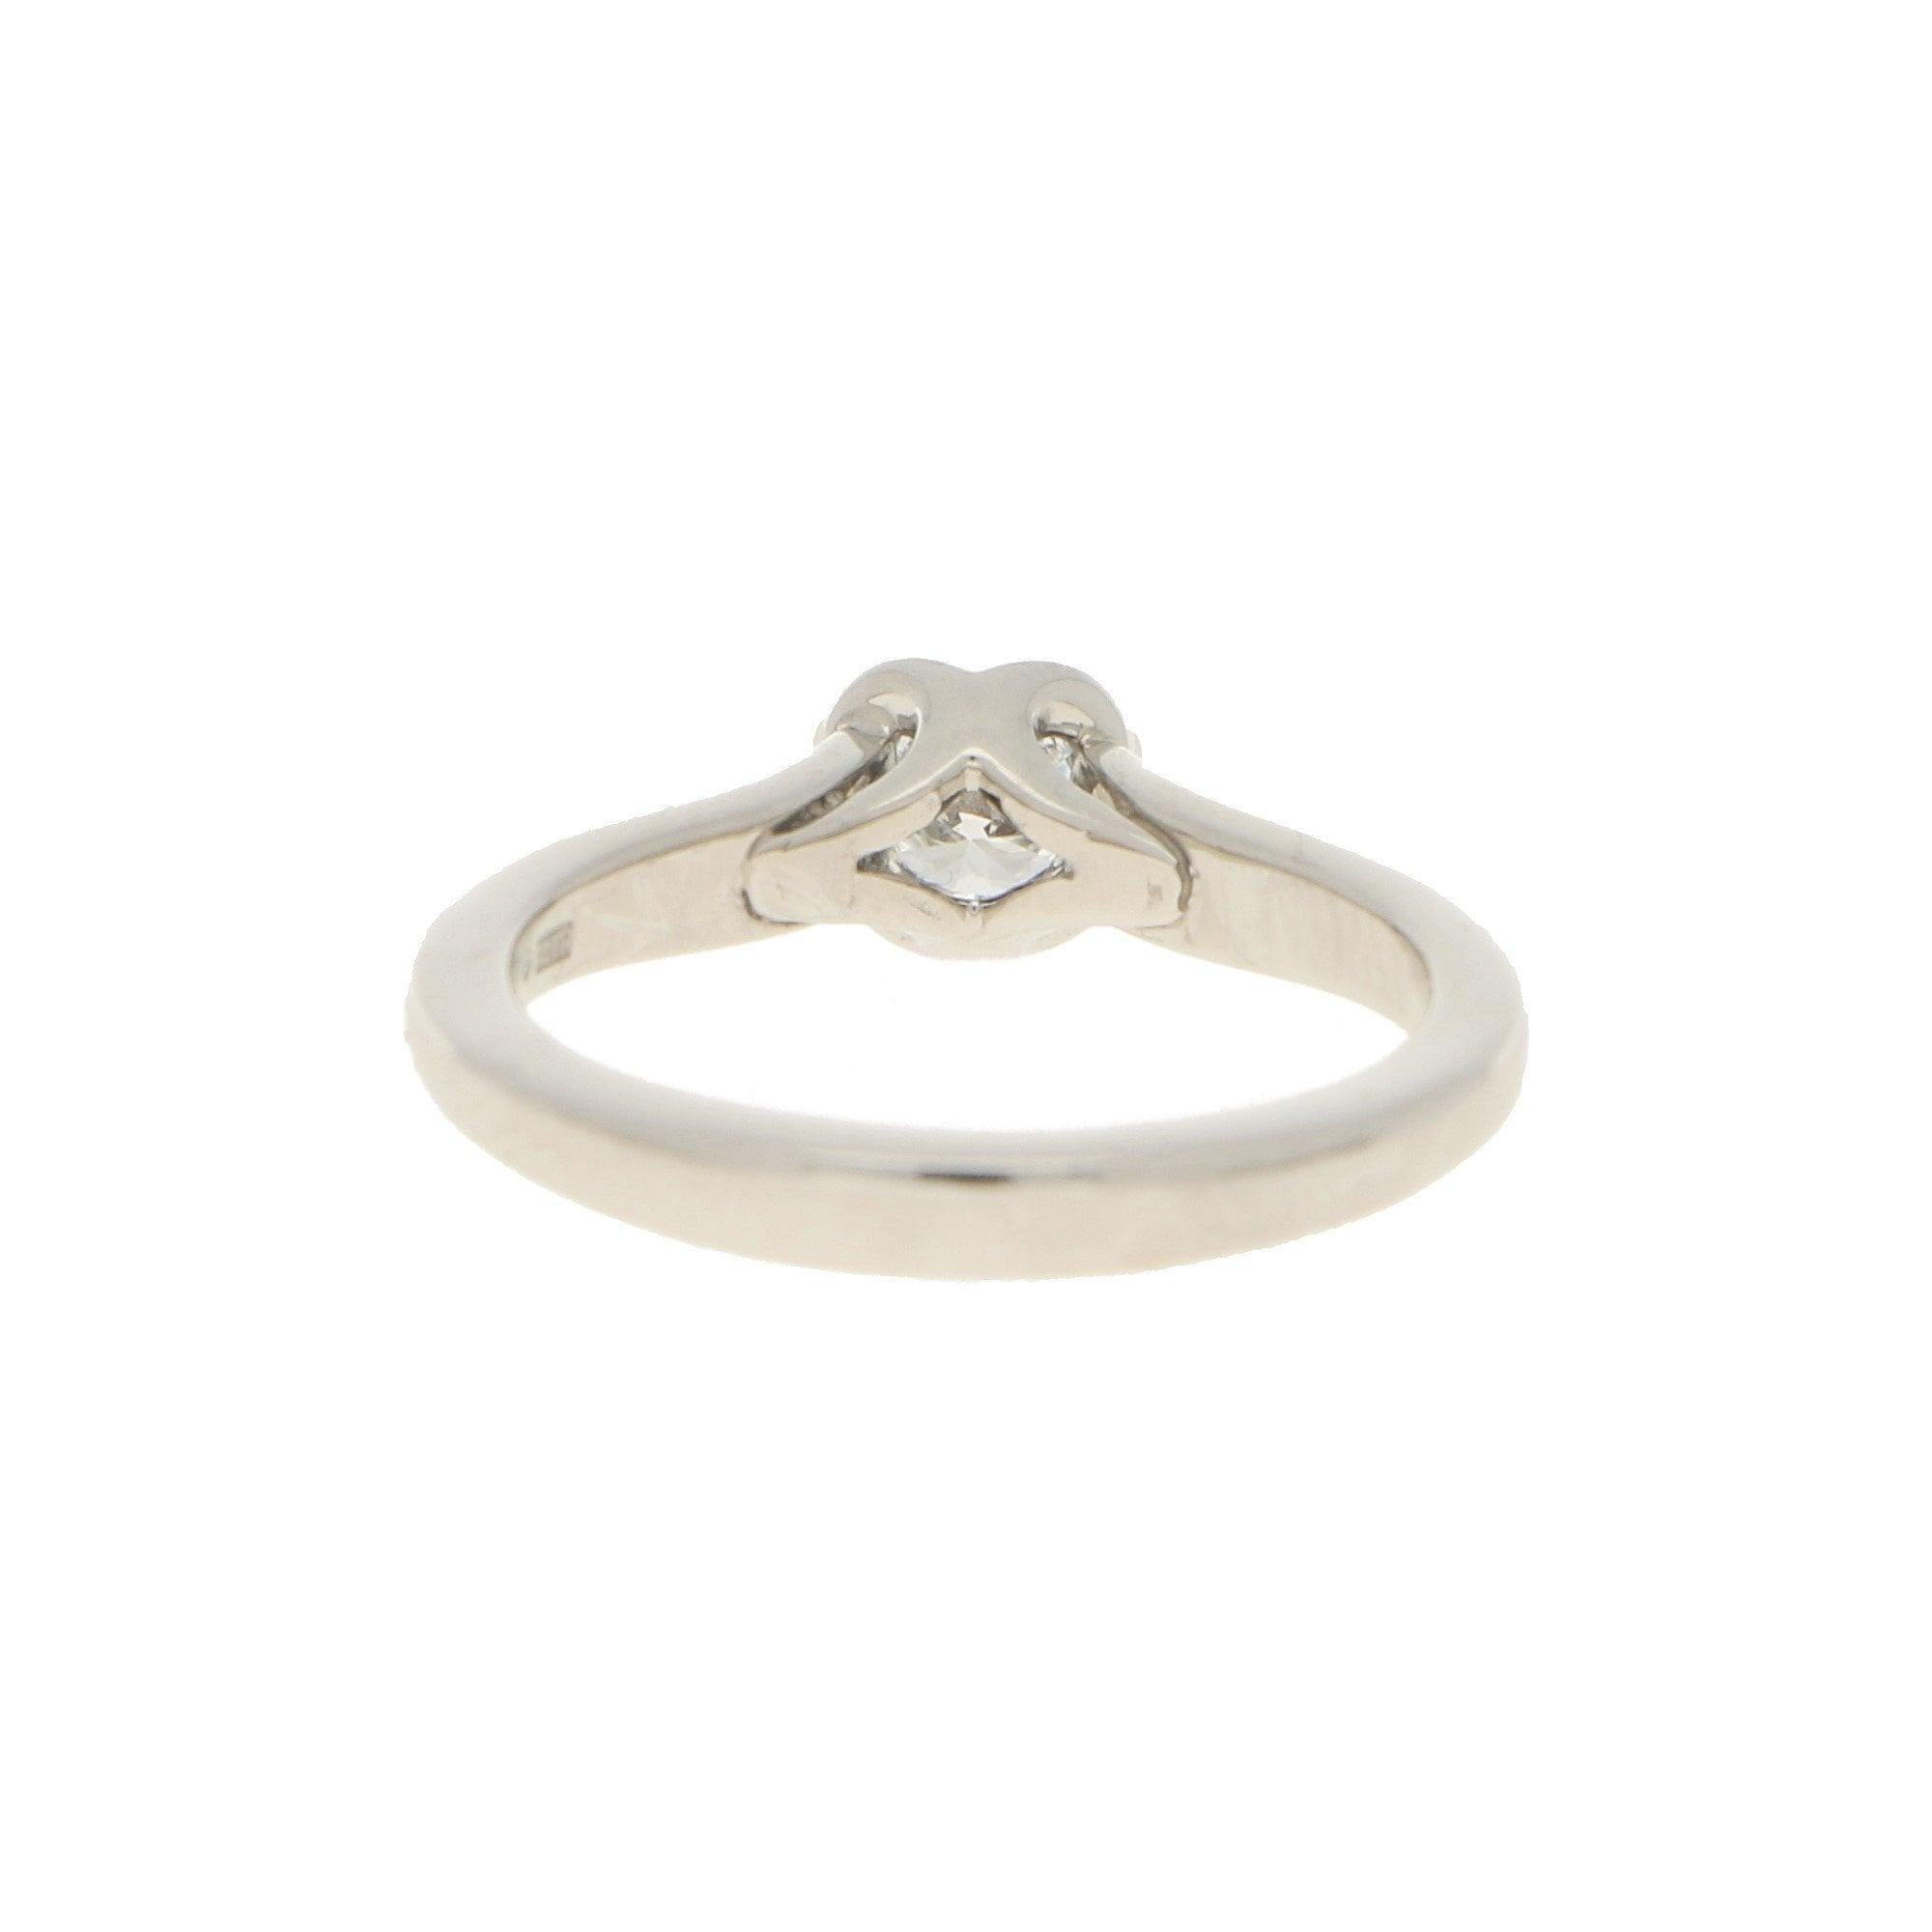 0.33 carat diamond solitaire ring